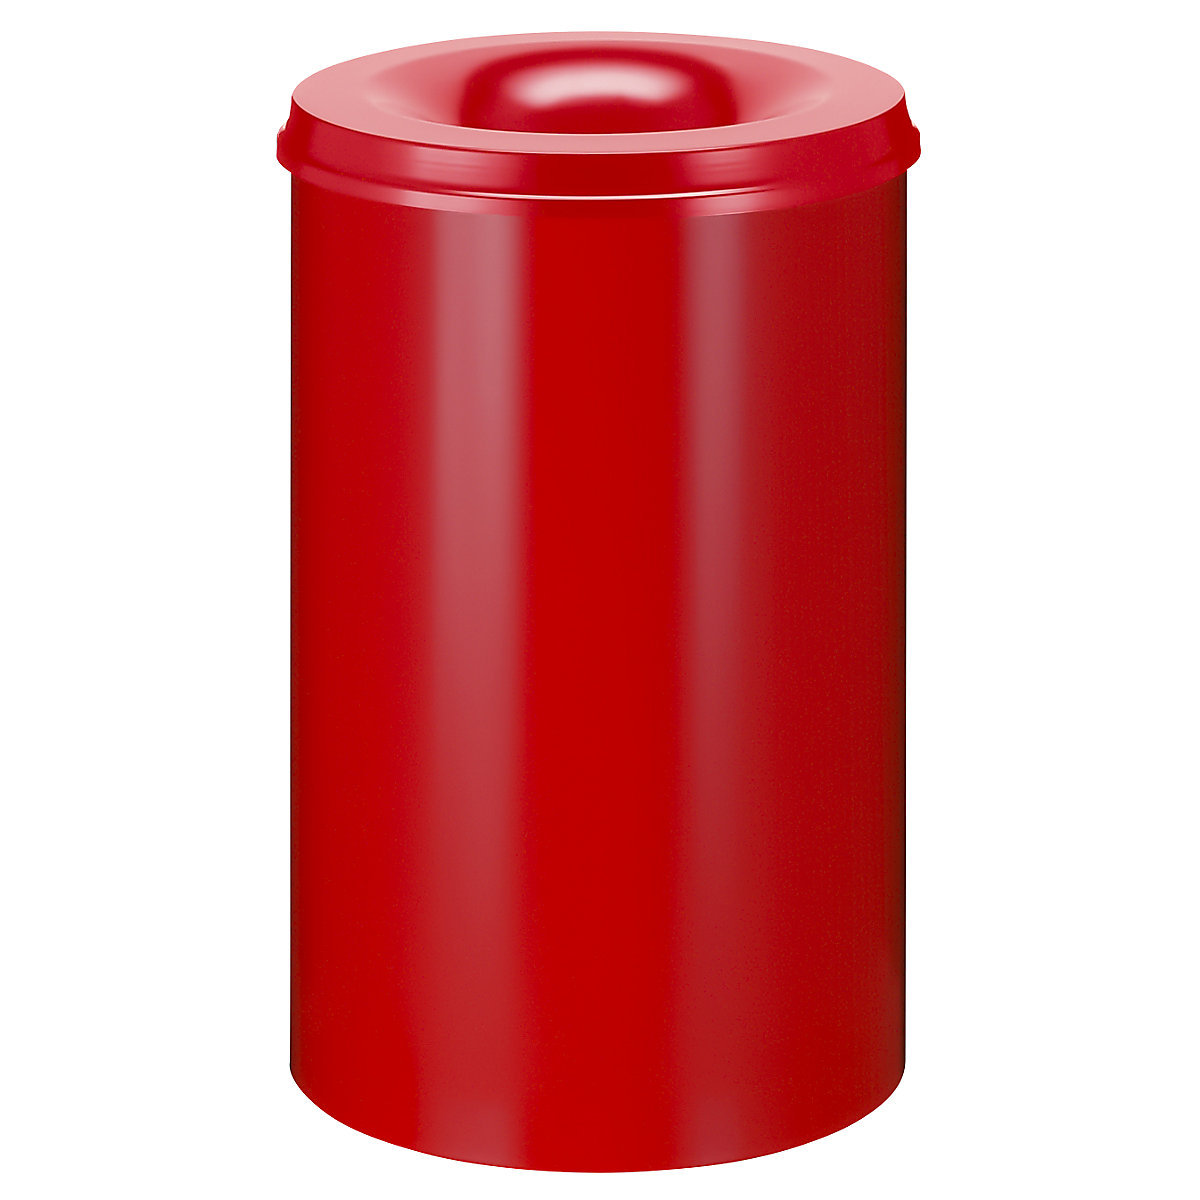 Corbeille à papier auto-extinguible, capacité 110 l, h x Ø 720 x 470 mm, corps rouge / étouffoir rouge